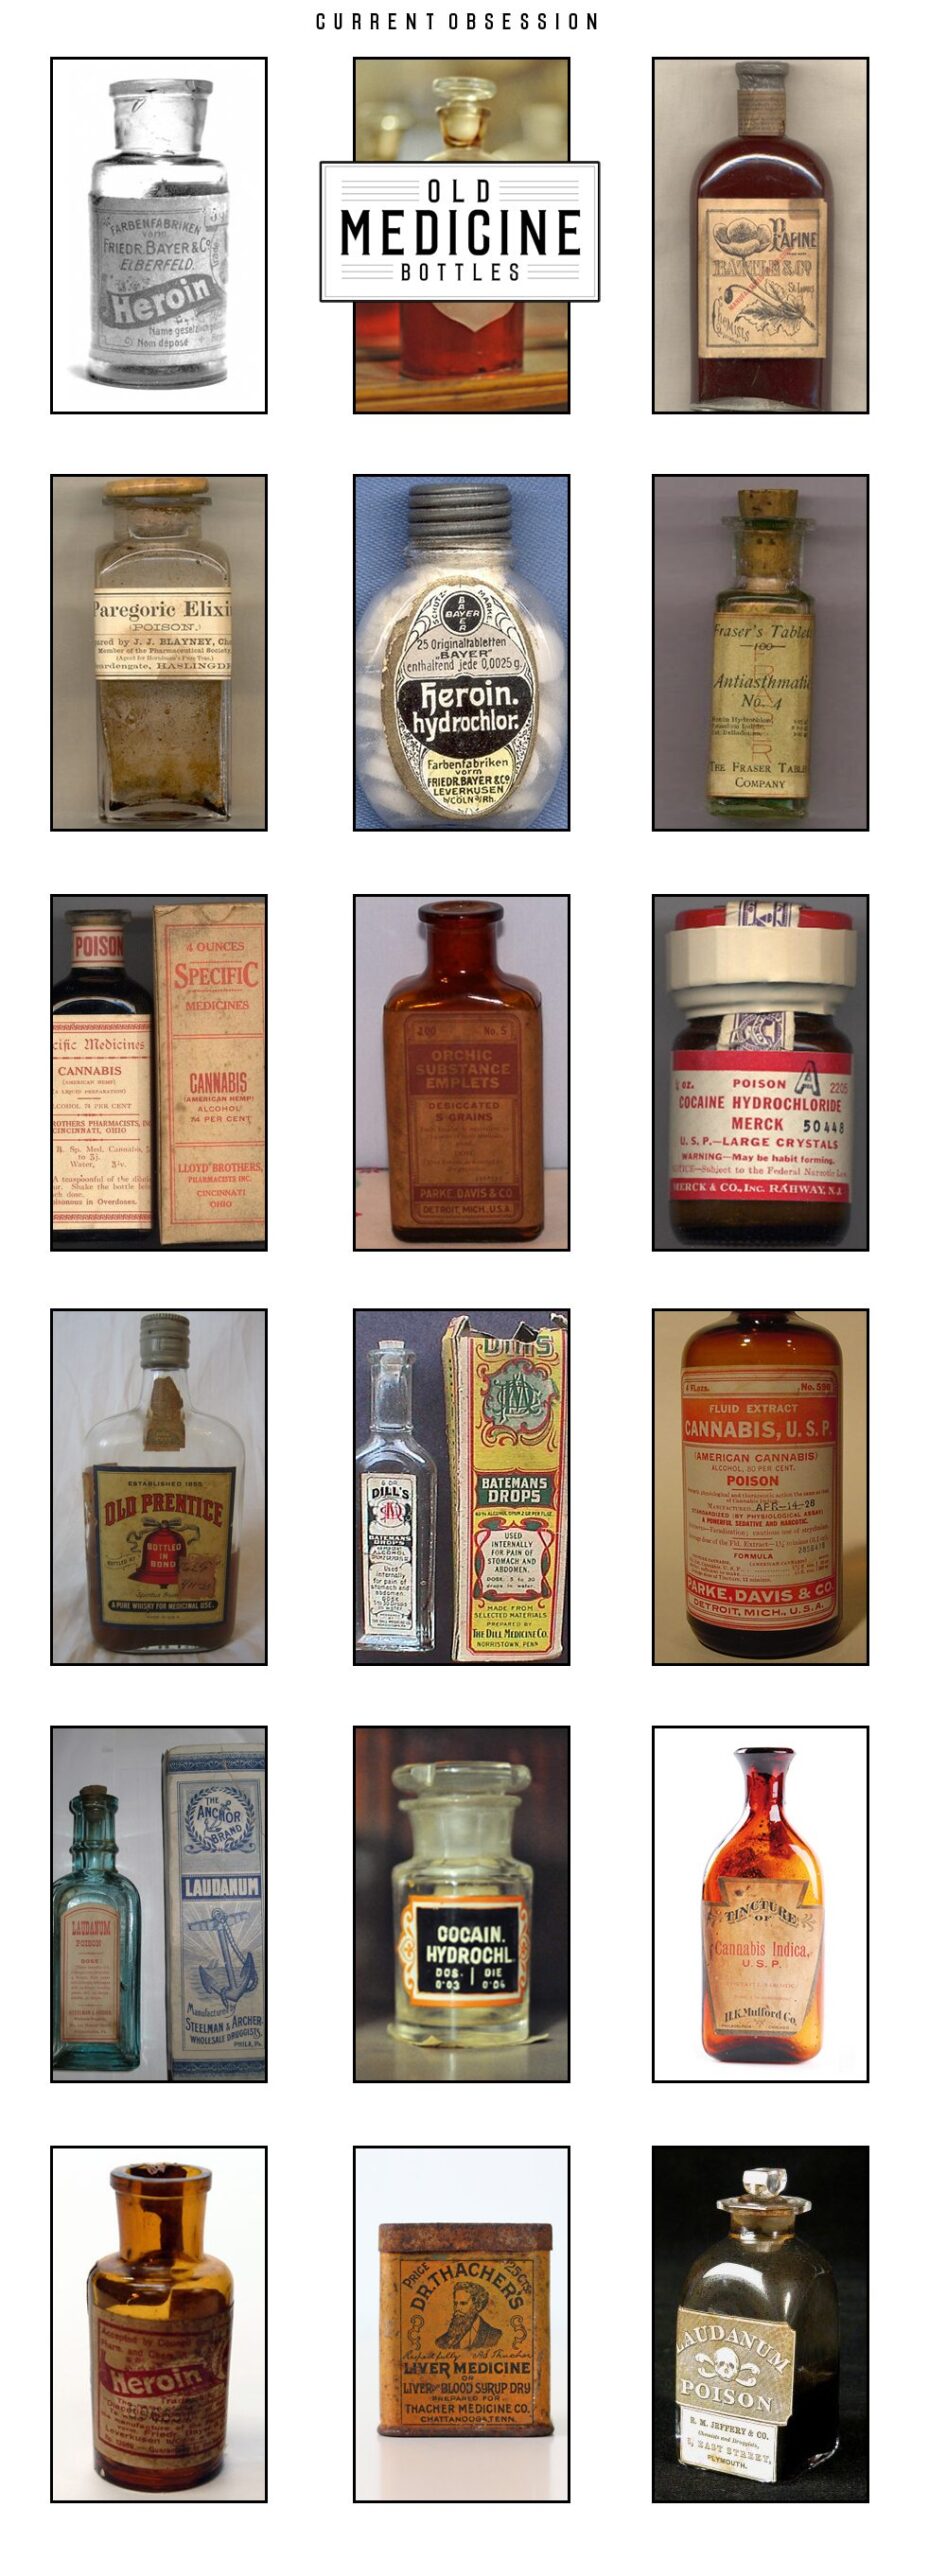 Current Obsession: Old Medicine Bottles